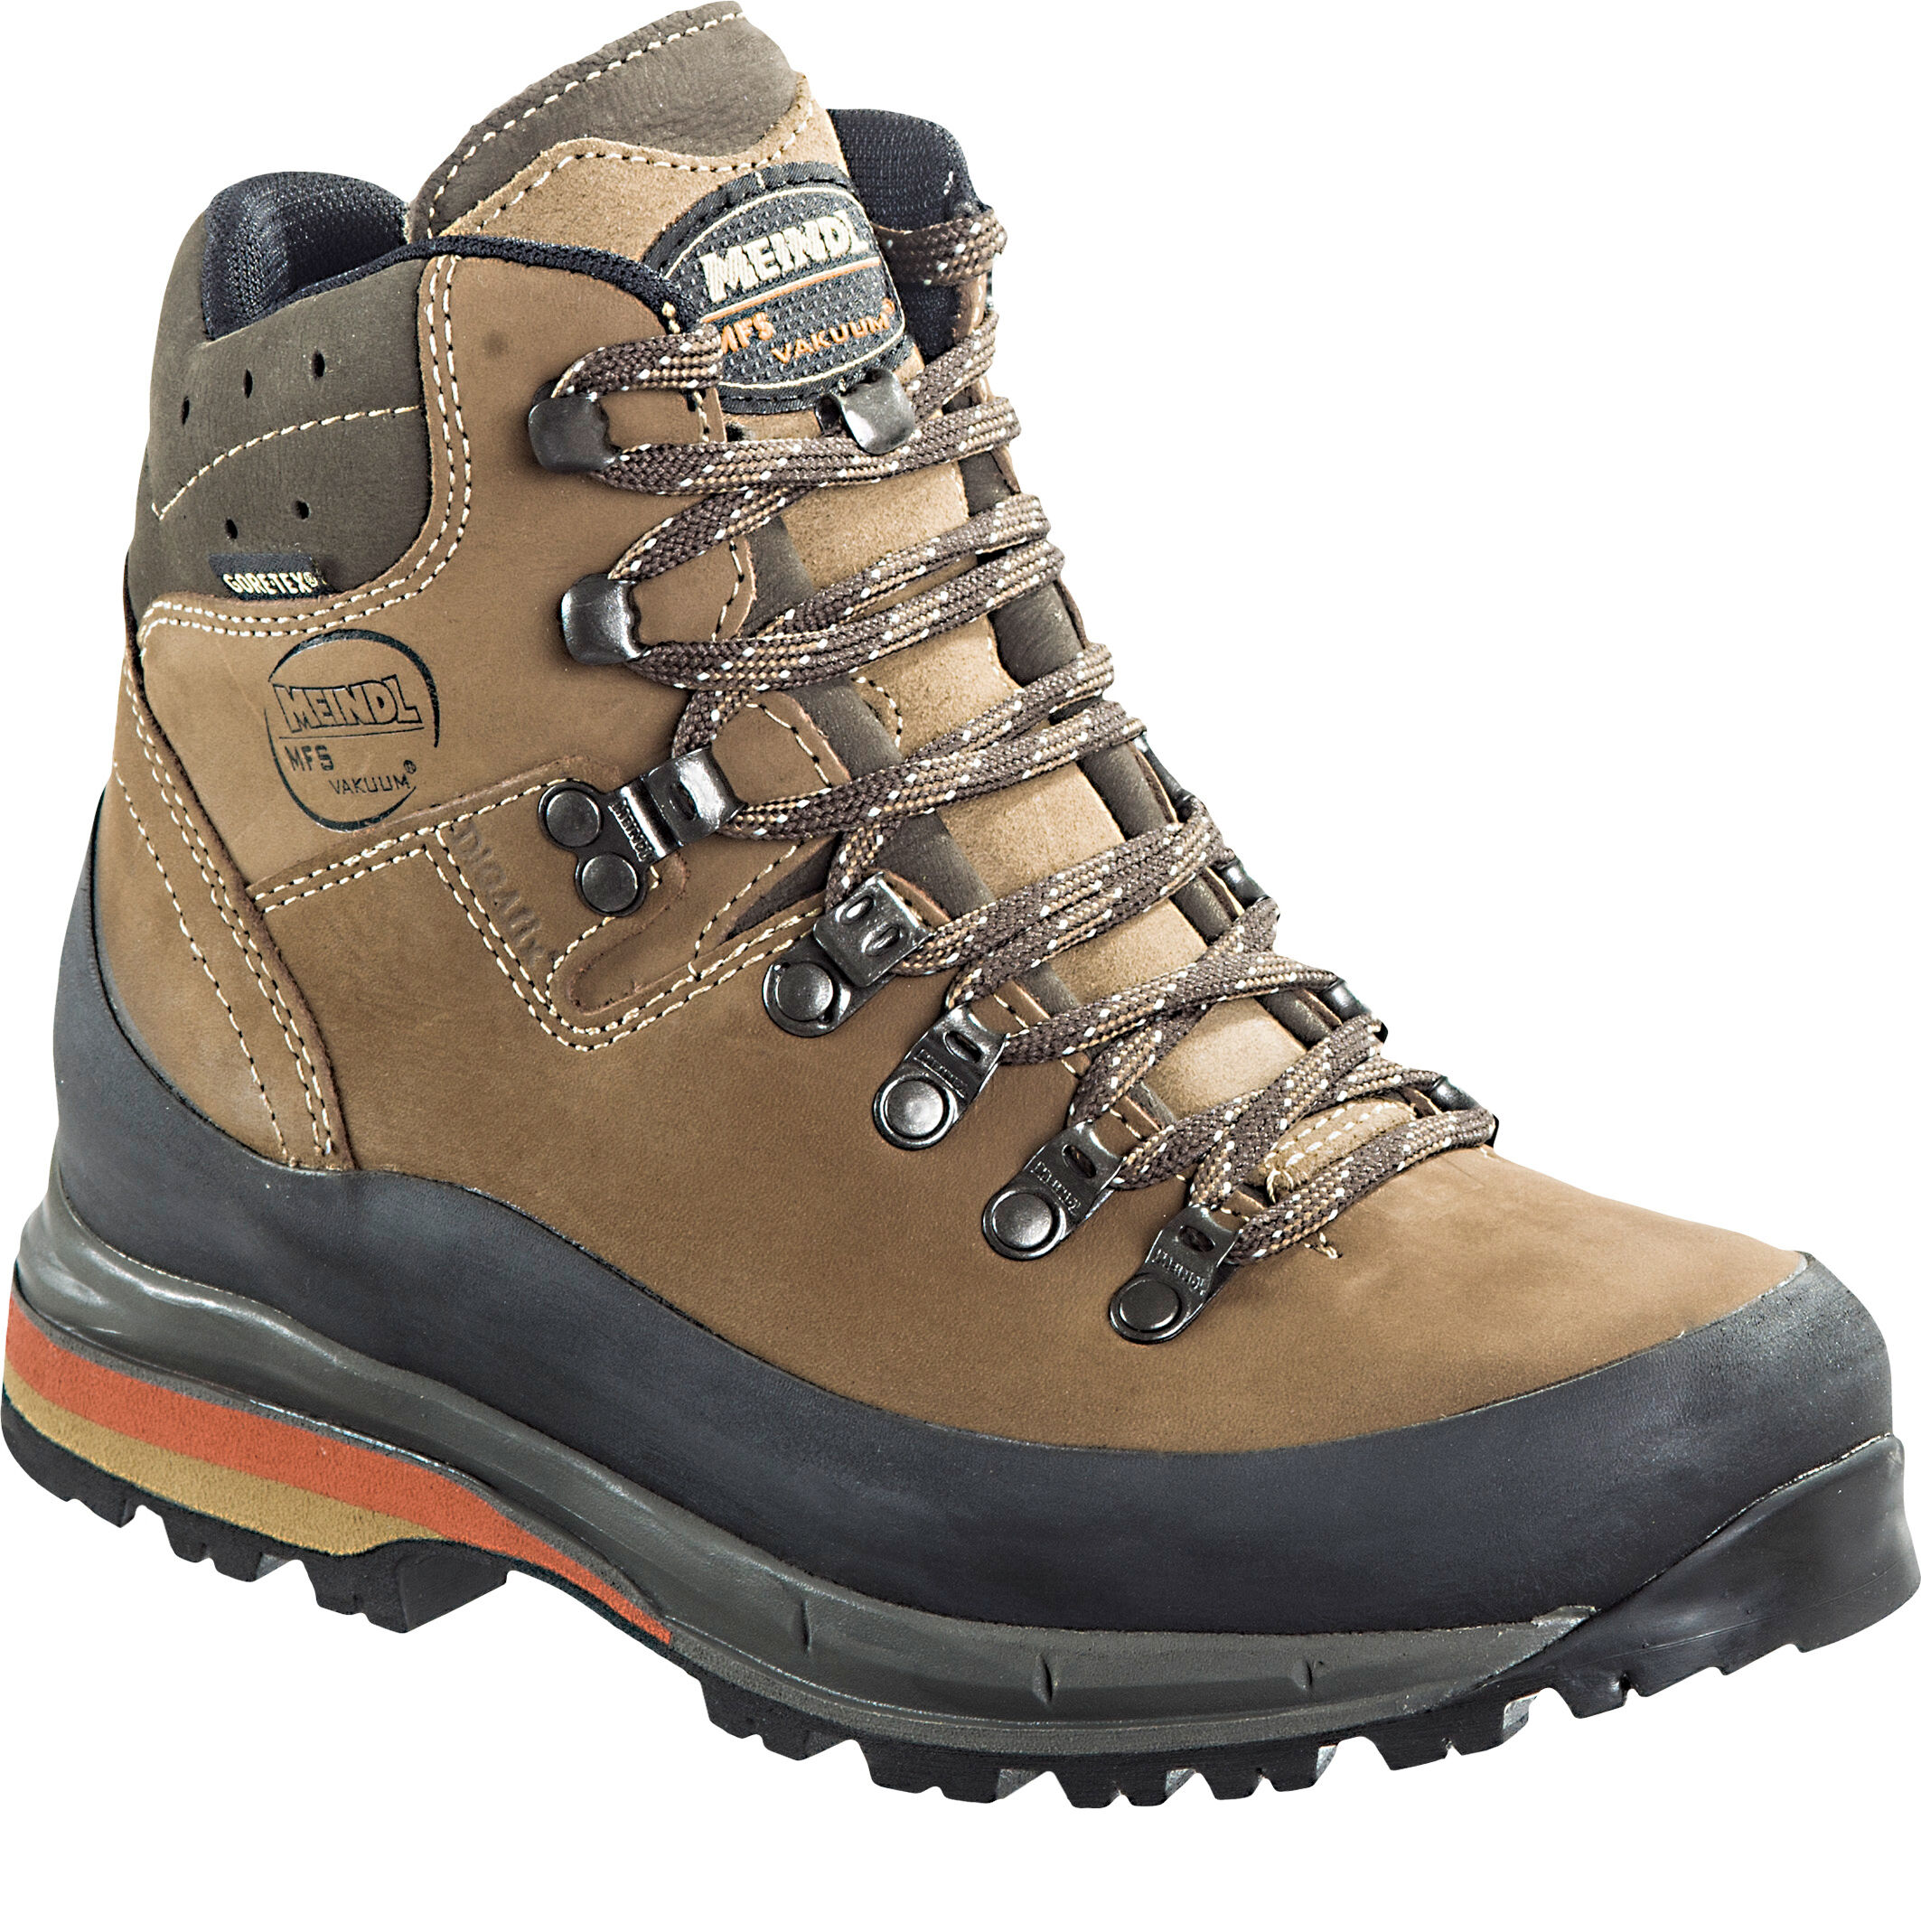 Meindl - Vakuum GTX - Hiking Boots - Women's